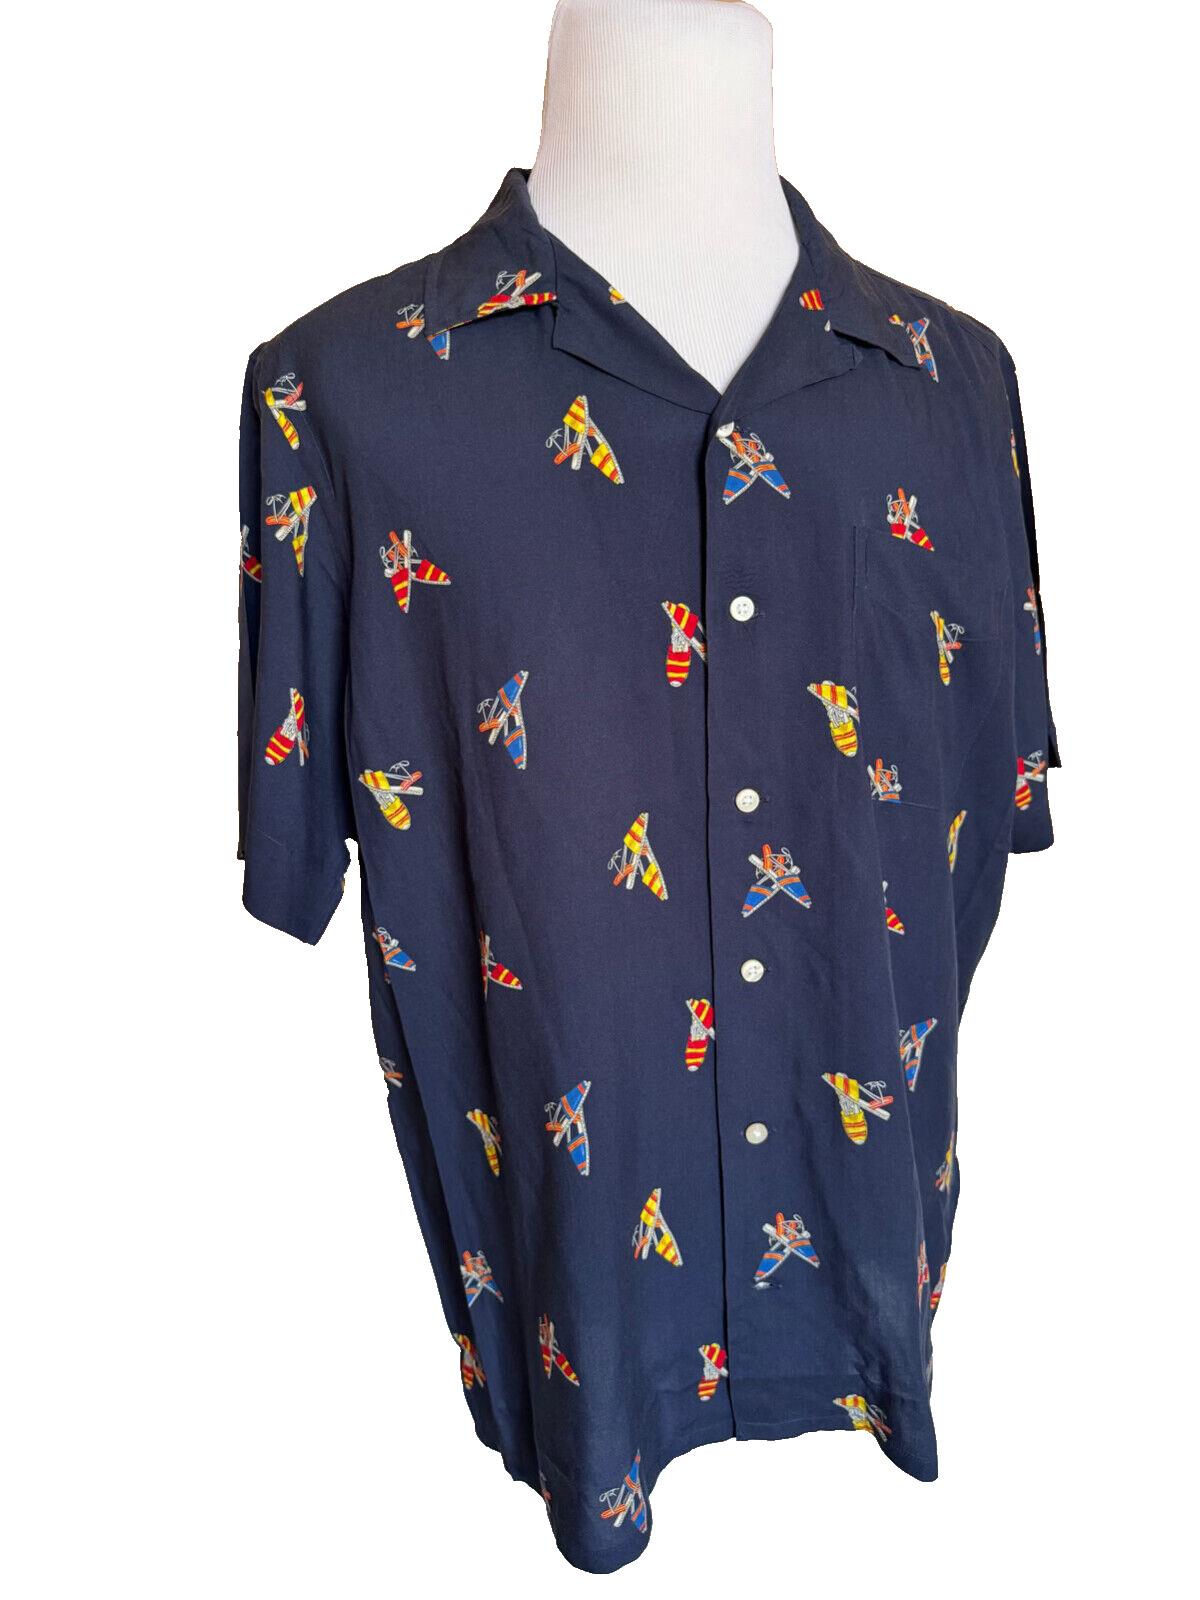 NWOT $228 Polo Ralph Lauren Viscose Short Sleeve Button Shirt Blue XL